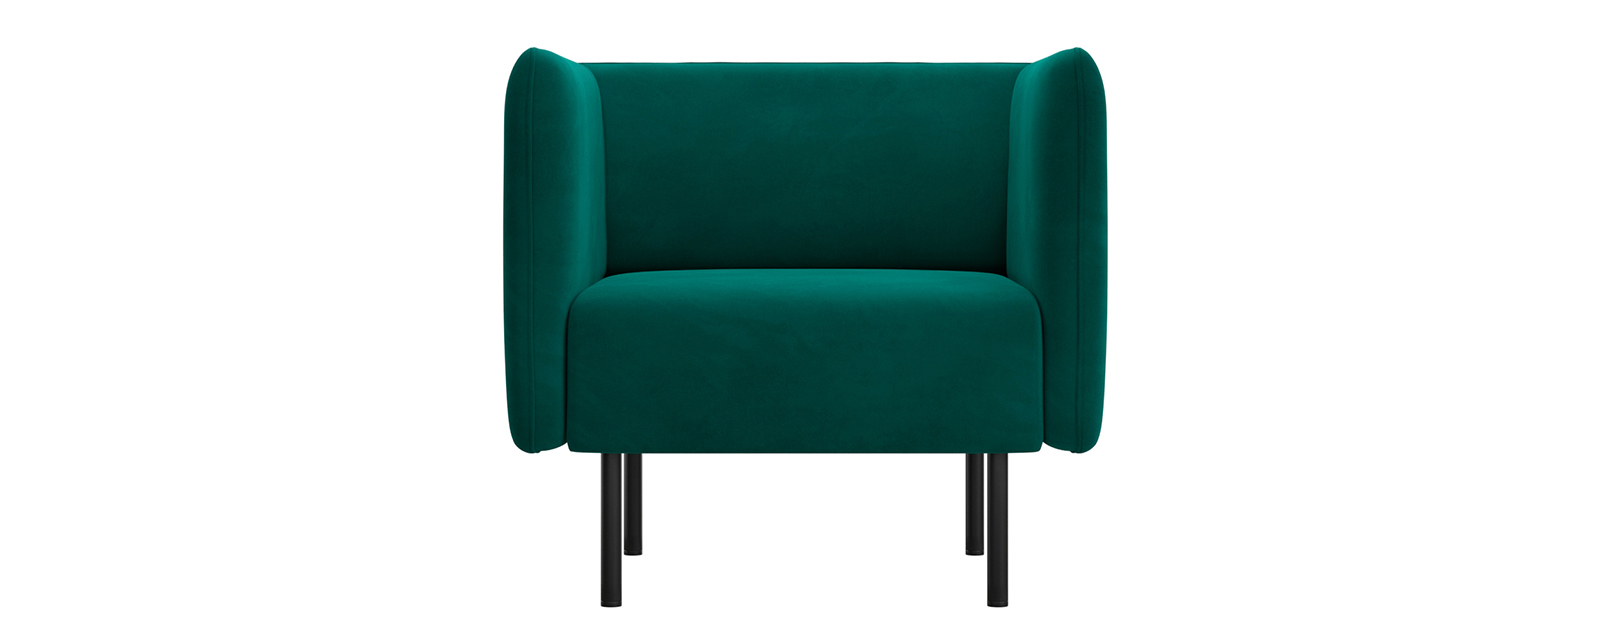 Кресло D1 furniture Рио AAA41219005, изумрудный/коричневый